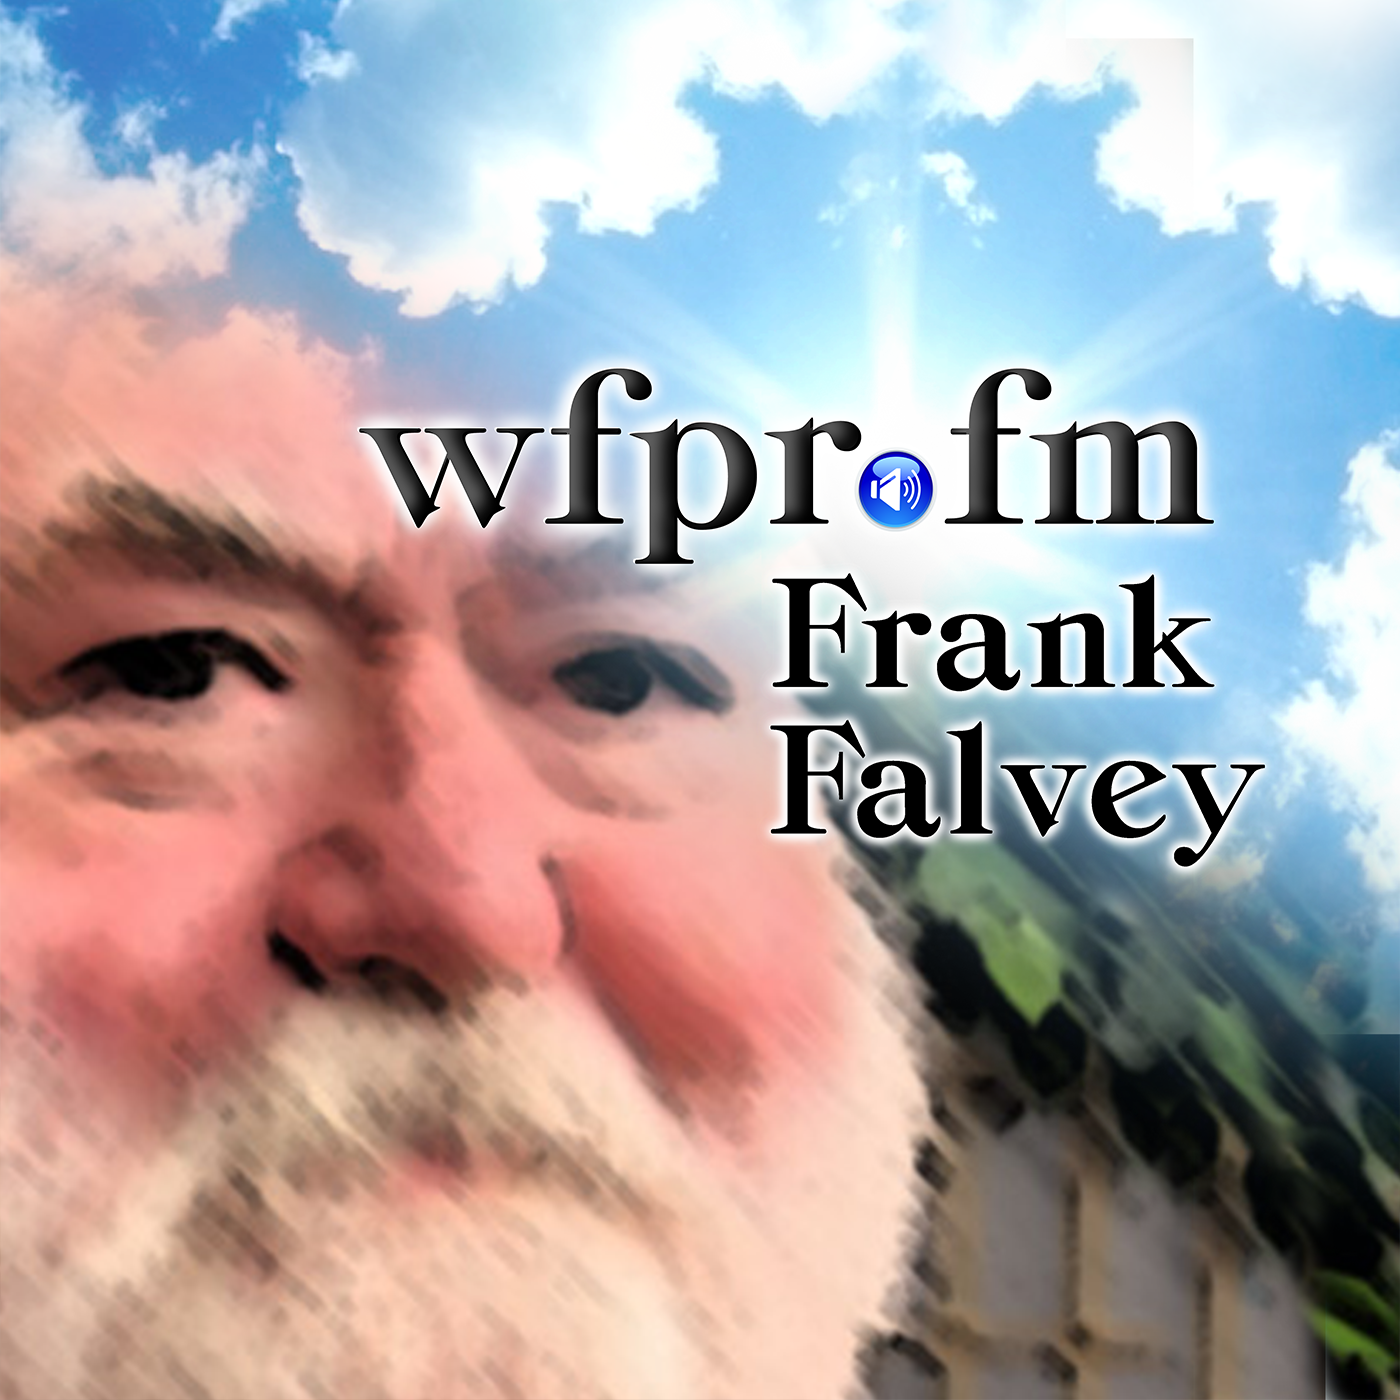 Artwork for podcast Frank Falvey - WFPR